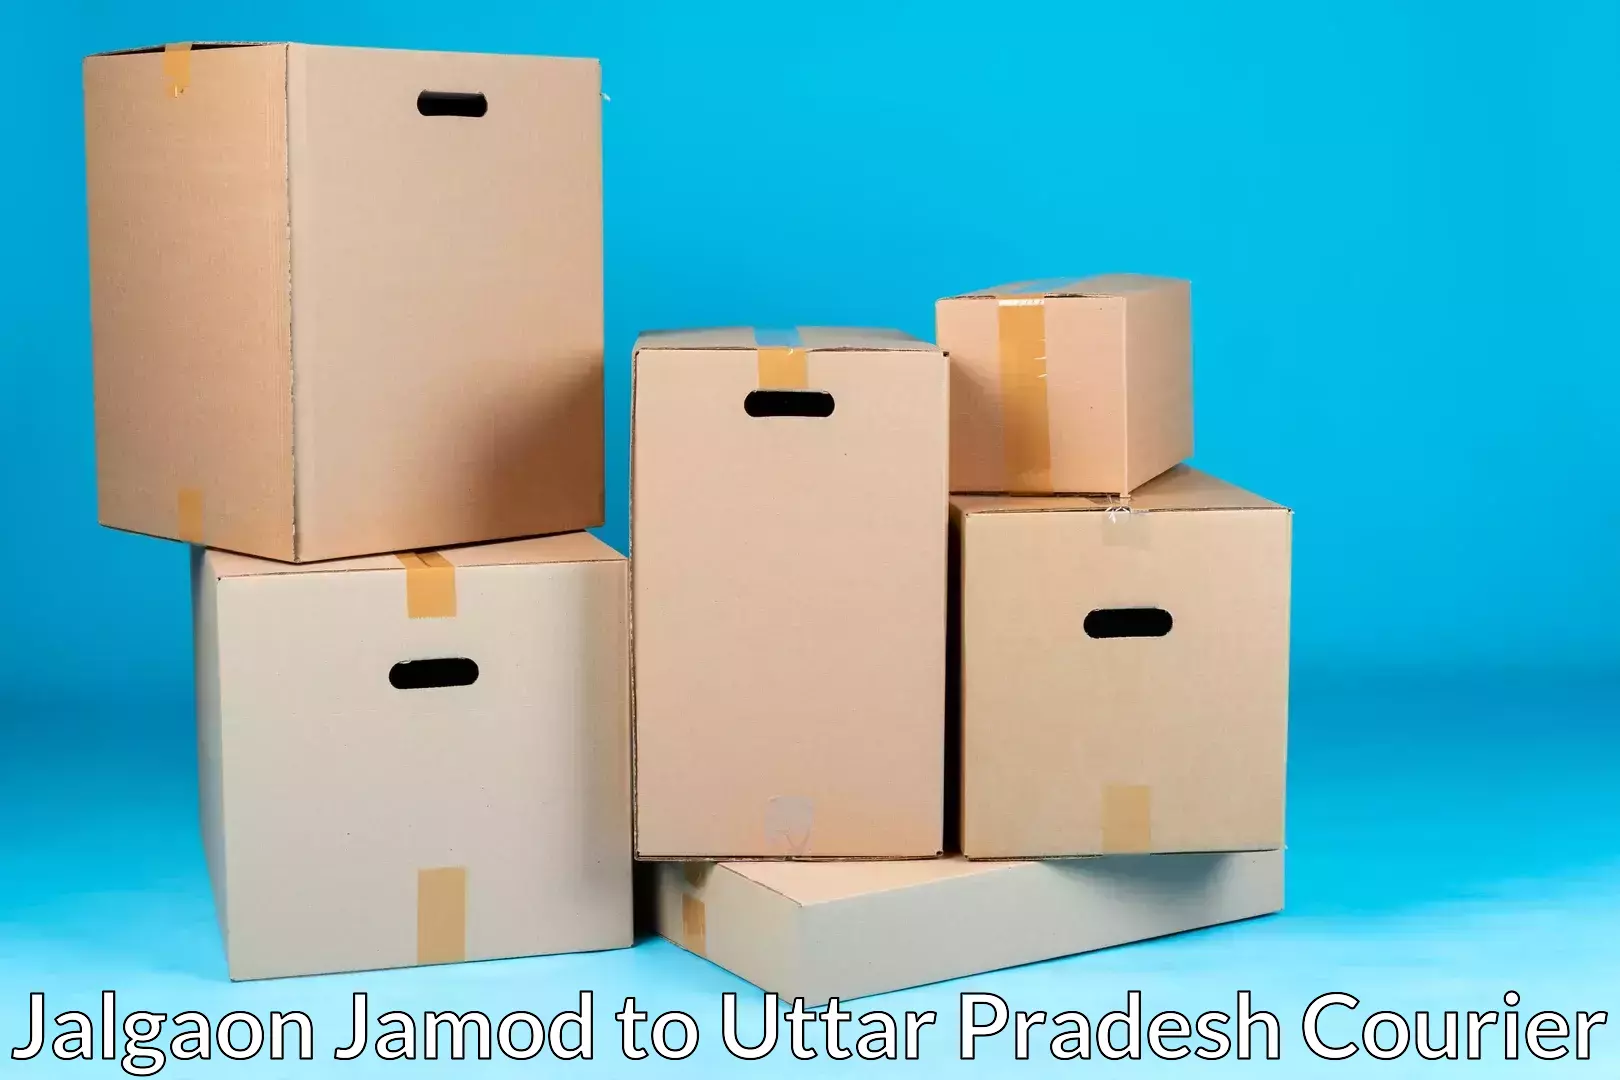 Furniture moving experts Jalgaon Jamod to Babatpur